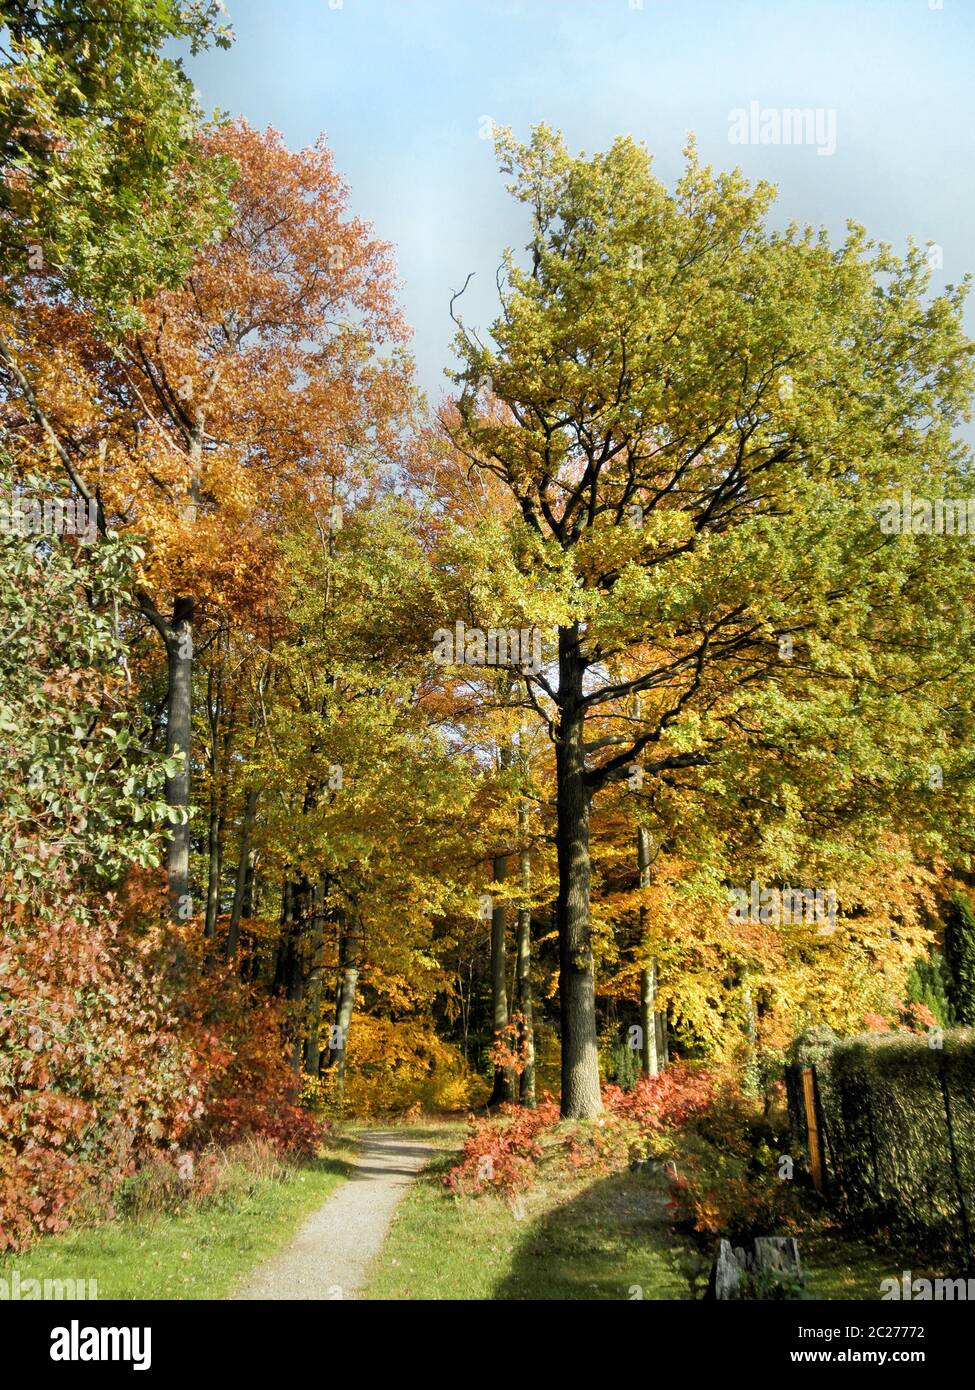 ein schmaler Pfad am Rand eines bunten Herbstwaldes, sonniger Tag im Oktober un estrecho camino en el borde de un bosque de otoño colorido, día soleado en Octob Foto de stock